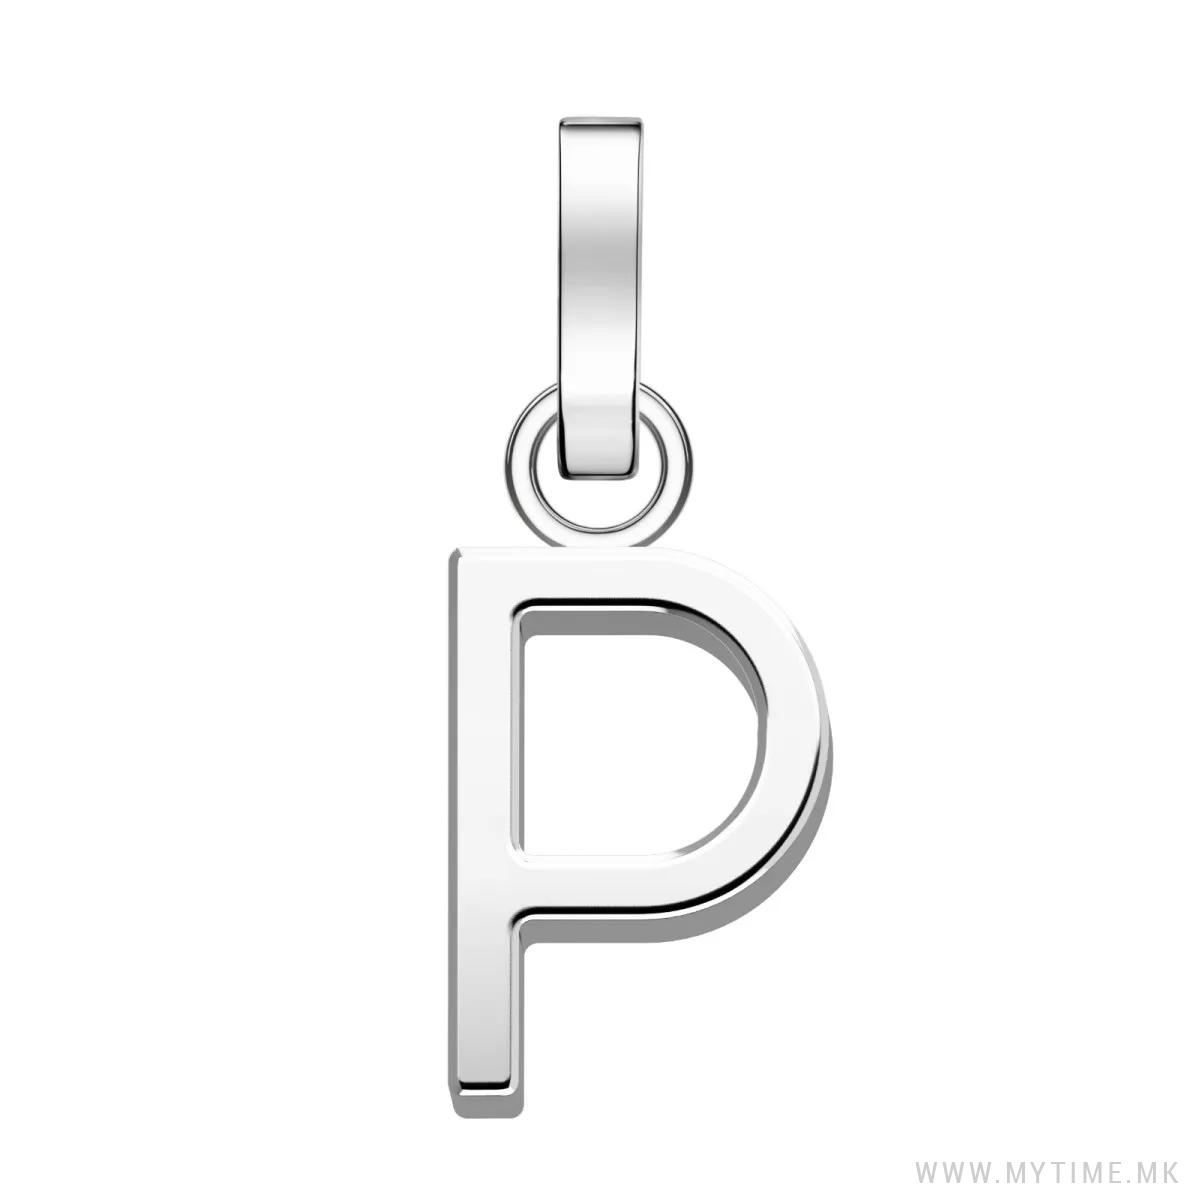 PE-Silver-1P 